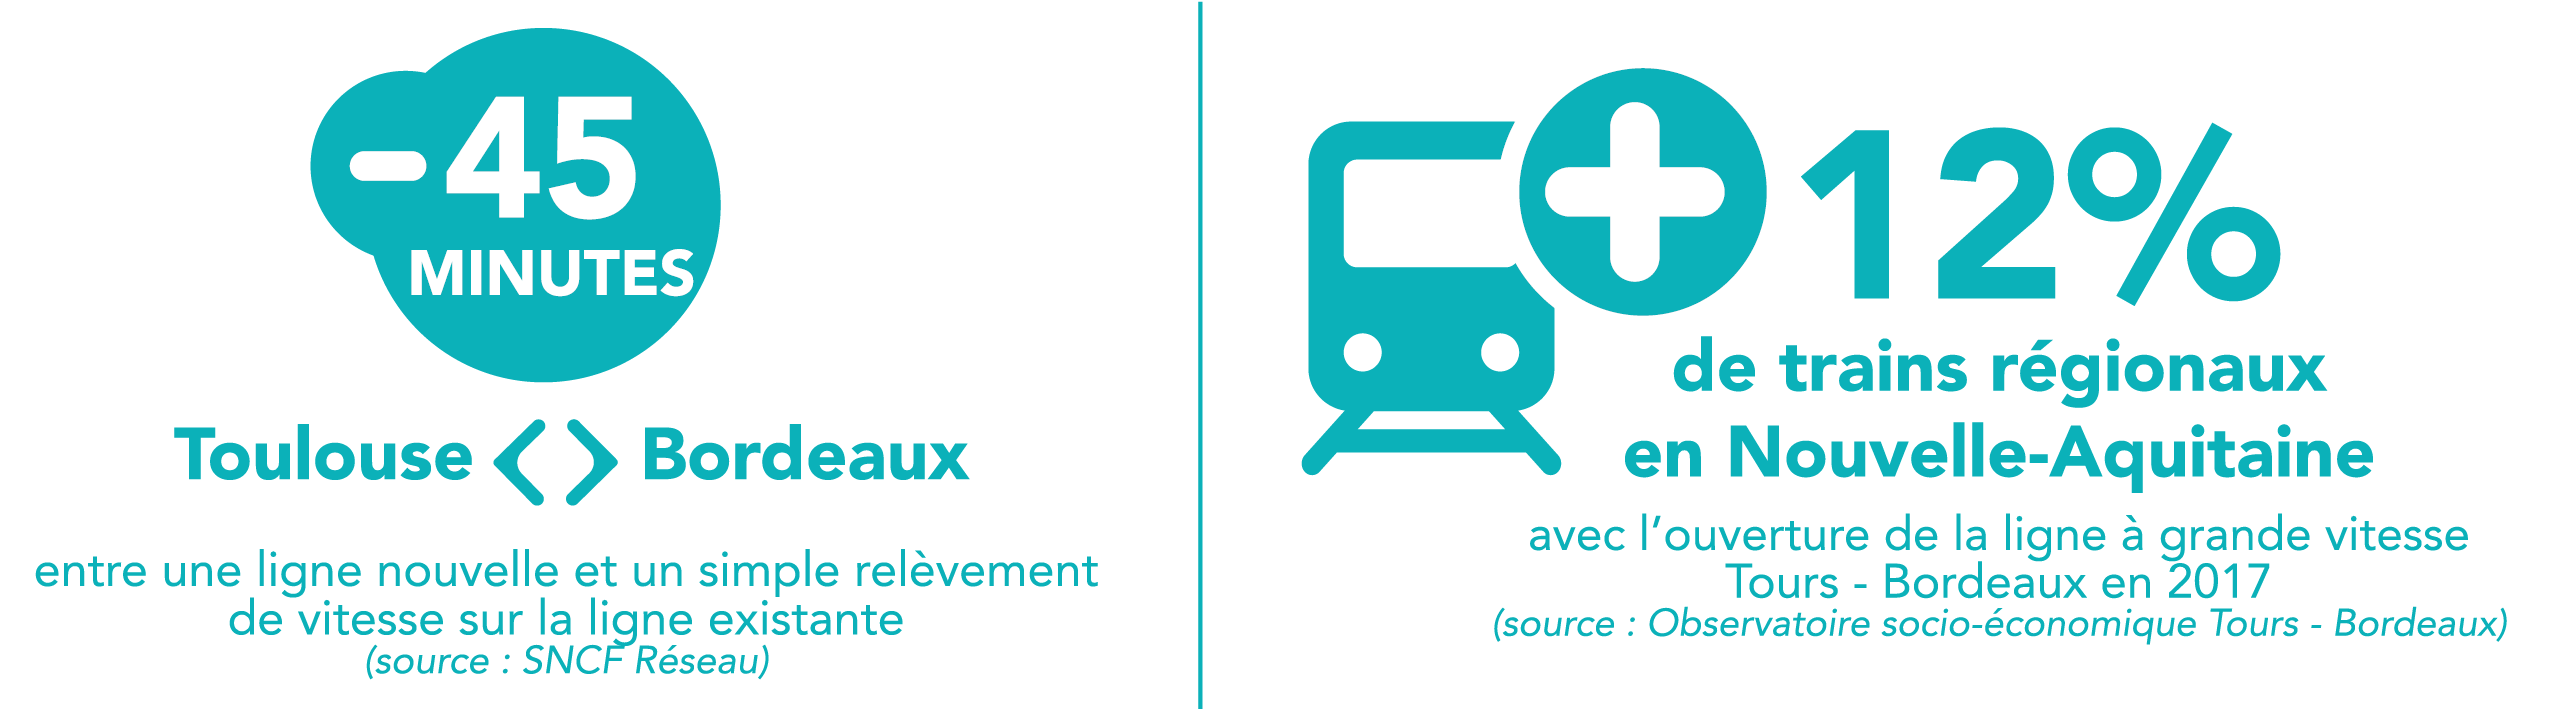 -45 minutes sur un trajet Toulouse-Bordeaux +12% de trains régionaux en Nouvelle-Aquiatine avec l'ouverture de la ligne Tours-Bordeaux en 2017